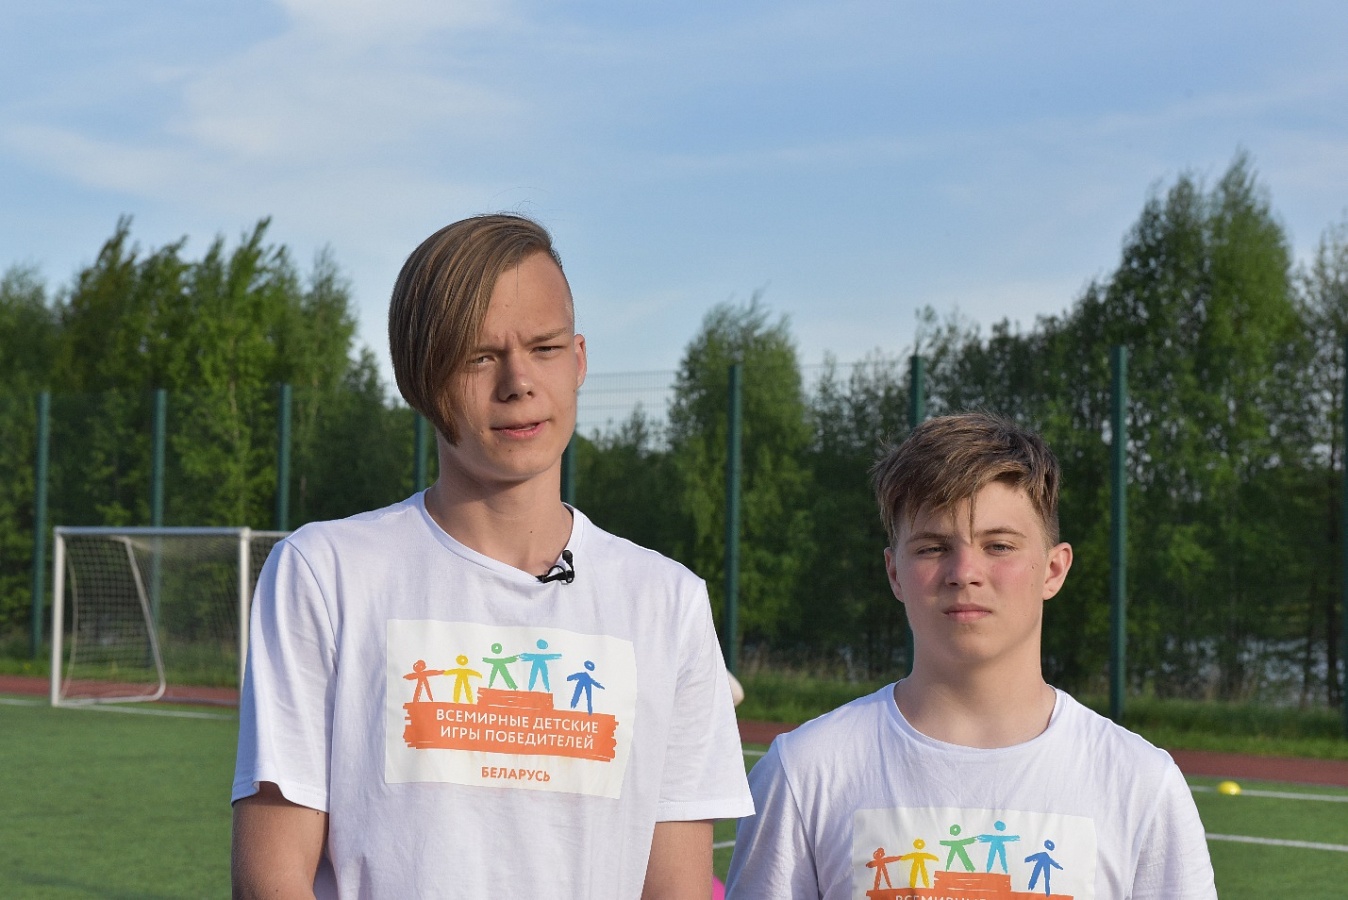 Илья Третьяков, 15 лет, из Могилева (занял в своей возрастной группе 1-е место по плаванию и 2-е место по бегу), Станислав Парфенюк, 14 лет, из Бреста (занял 1-е место в шахматах)